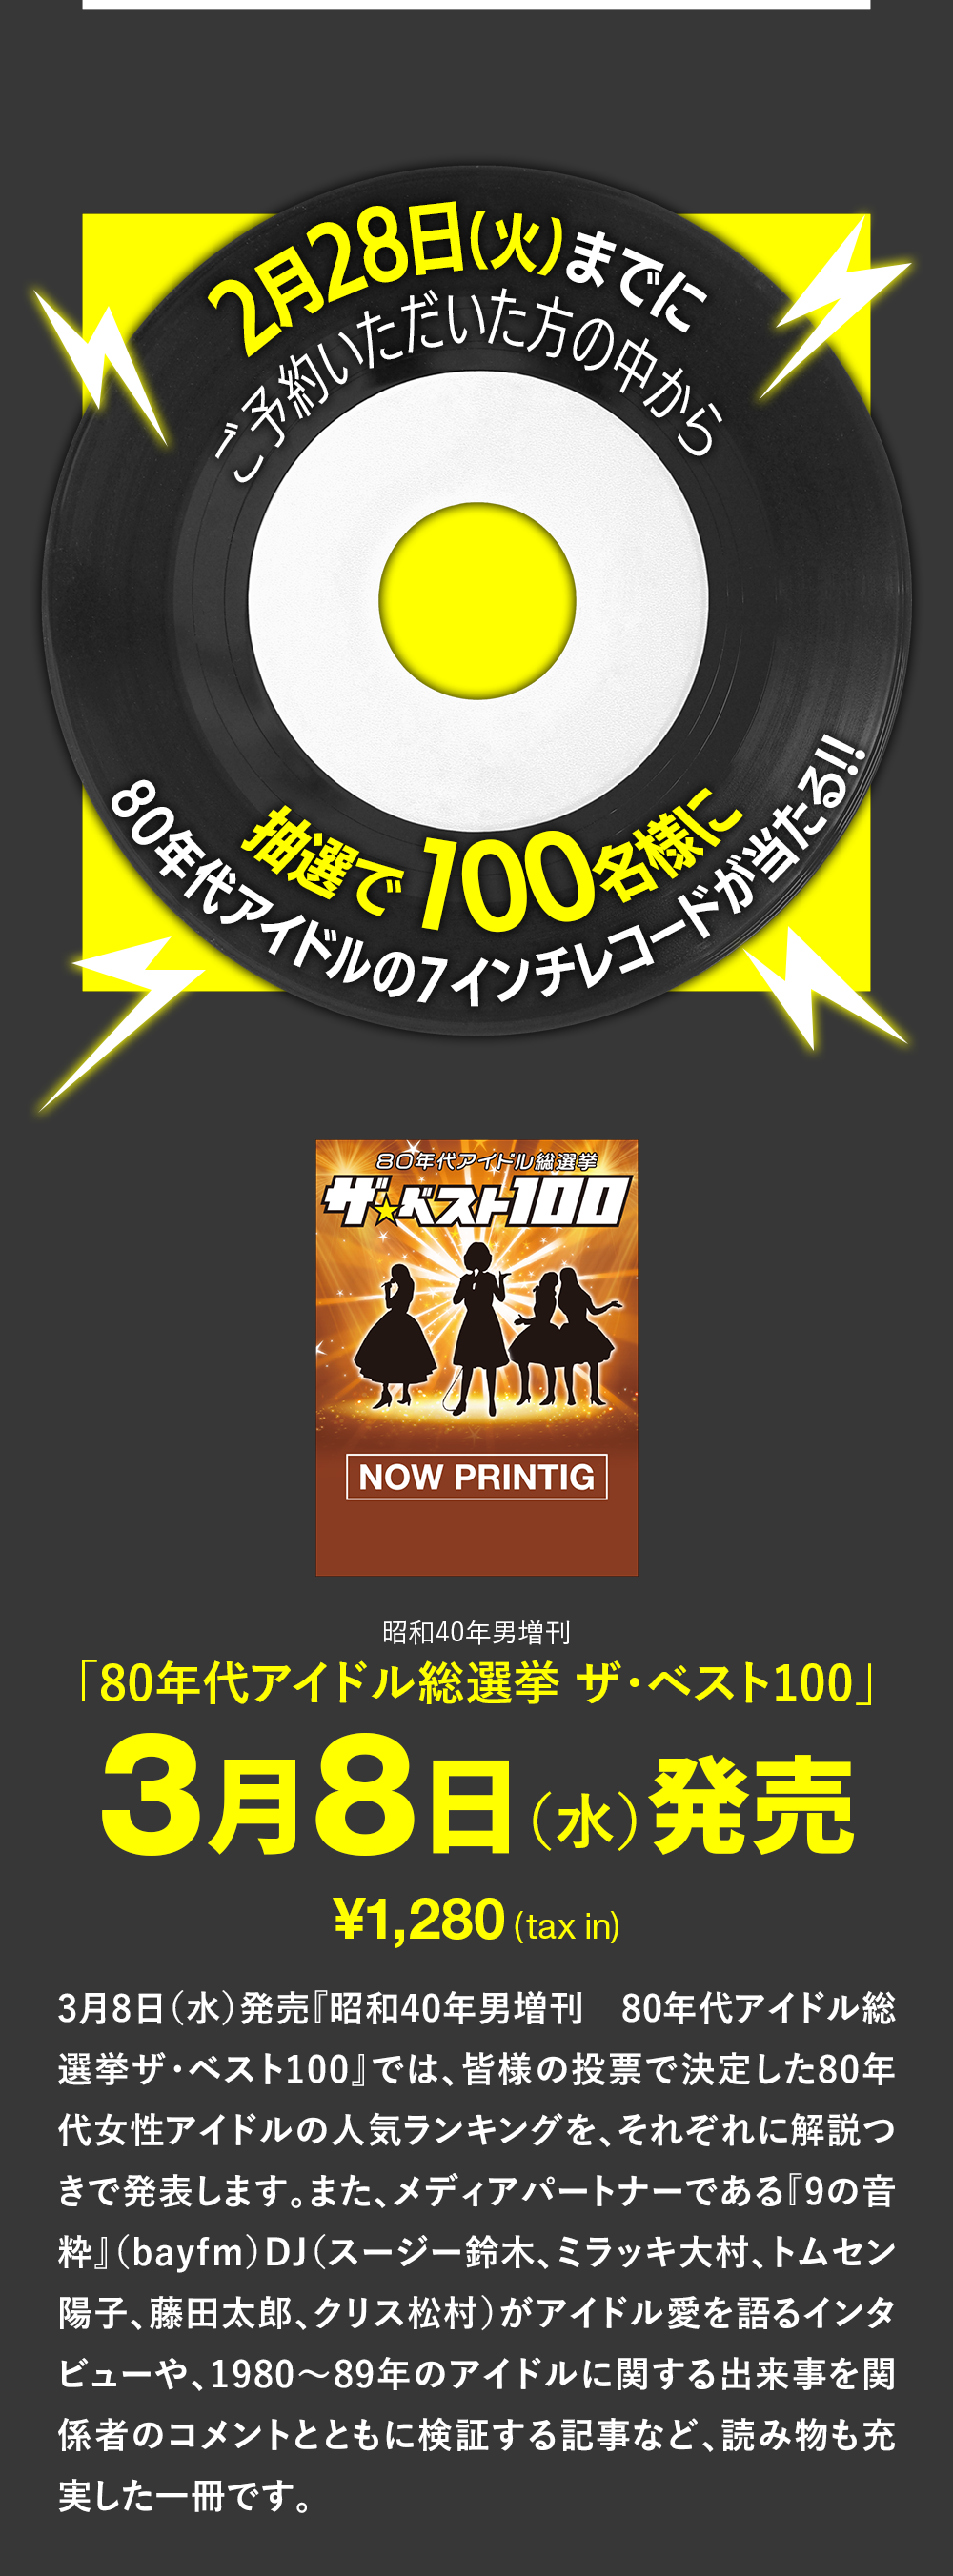 80年代アイドル、7インチレコード、80年代アイドル総選挙 ザ・ベスト100、3月8日発売、1280円